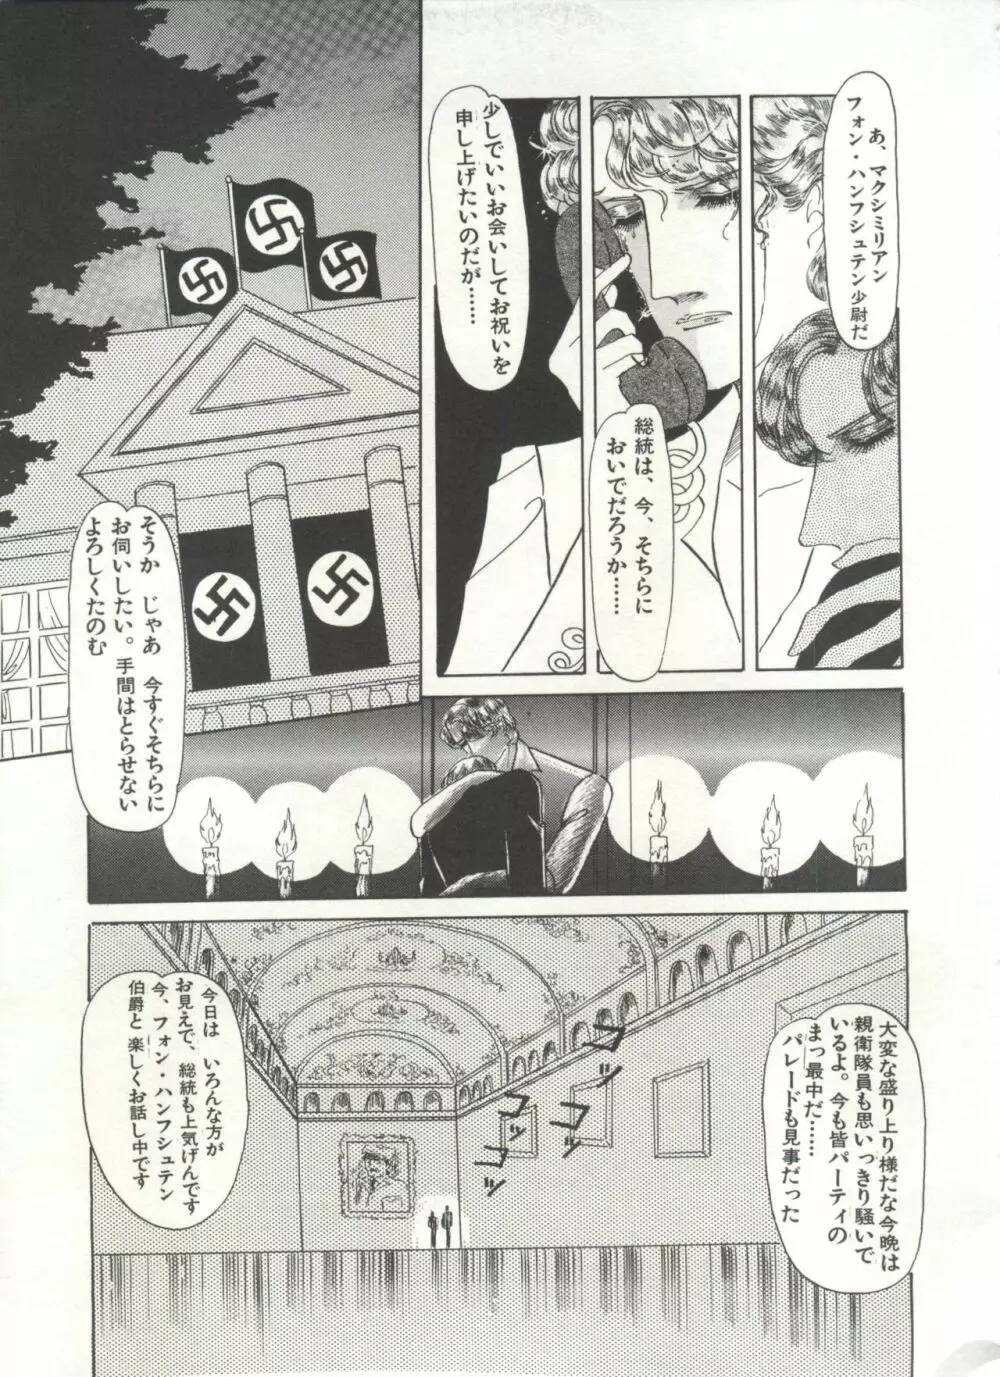 [Anthology] 美少女症候群(2) Lolita syndrome (よろず) 190ページ